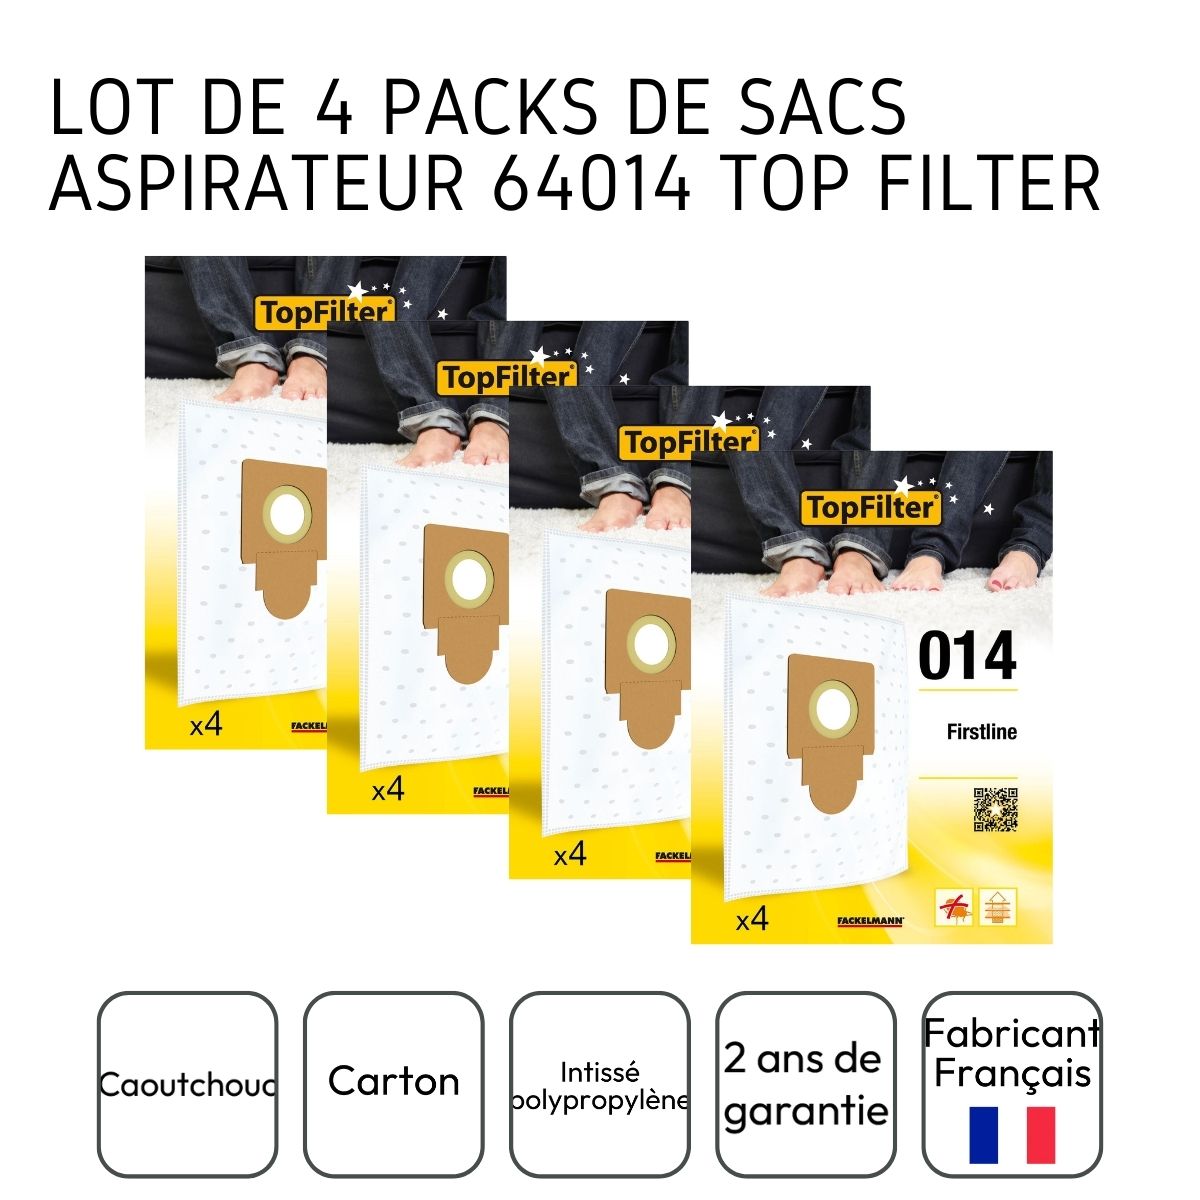 Lot de 4 packs de 4 sacs aspirateur pour Firstline TopFilter Premium